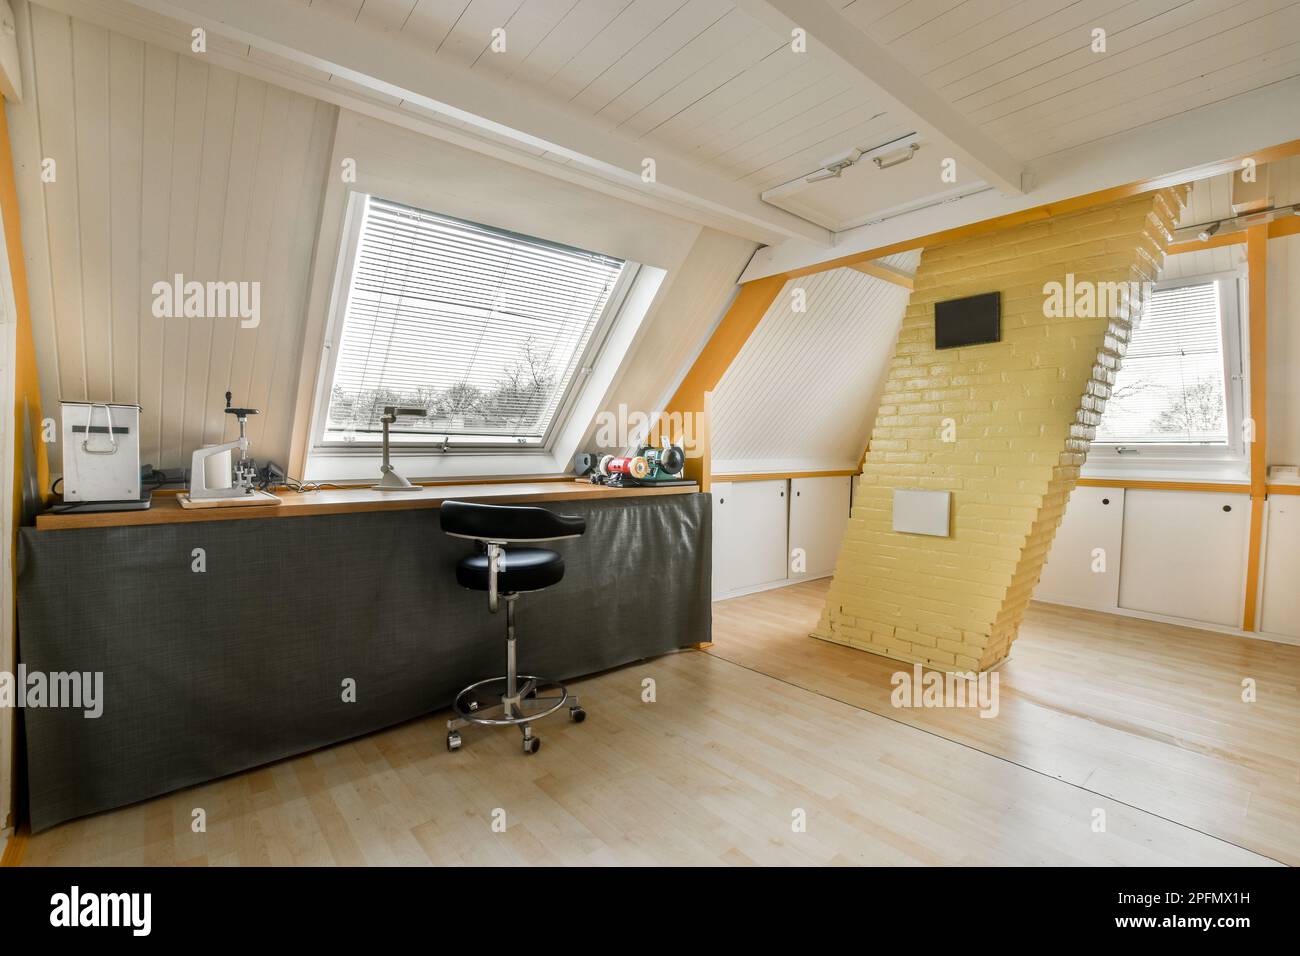 Ein Küchenbereich im Dachgeschoss mit Holzfußboden und gelb bemalten Tapeten an den Wänden Stockfoto